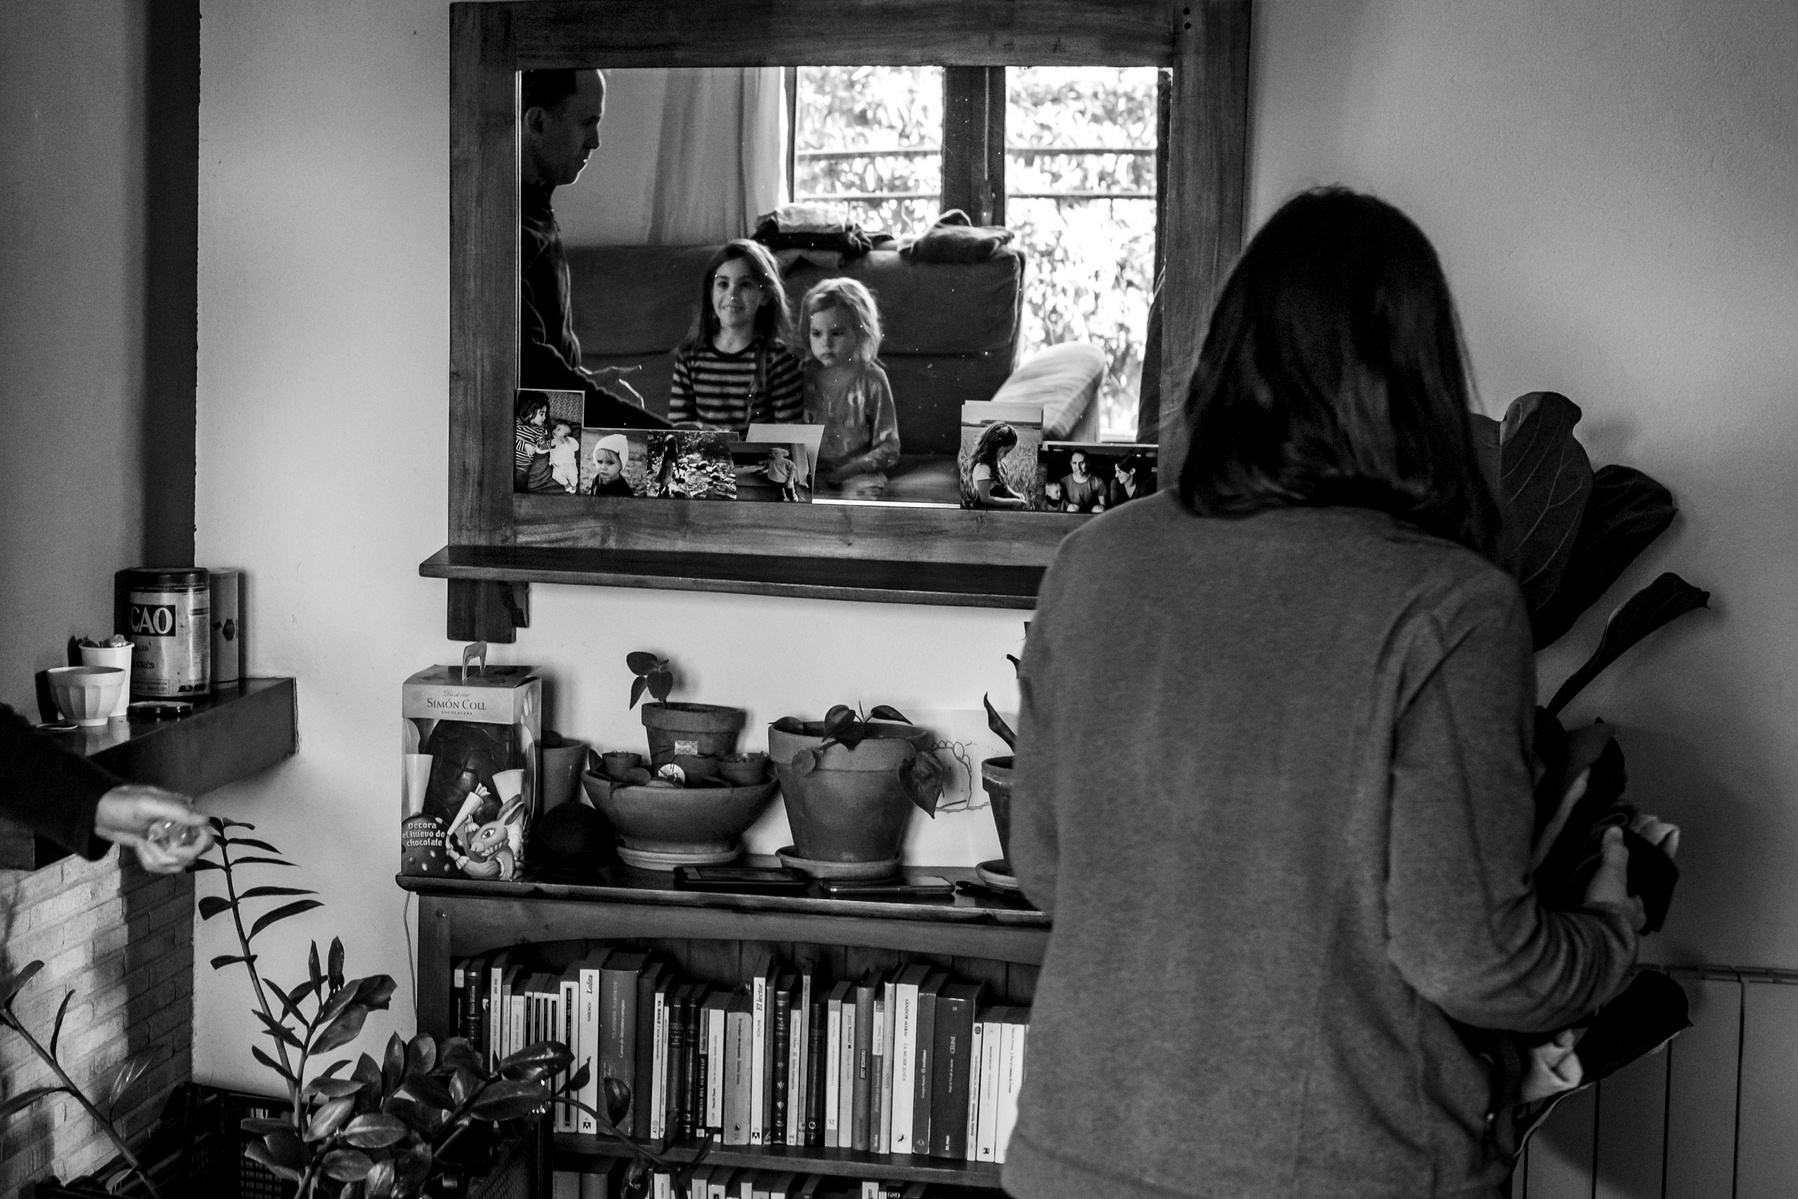 Retrato de familia con reflejo en un espejo
Manuela Franjou family photography